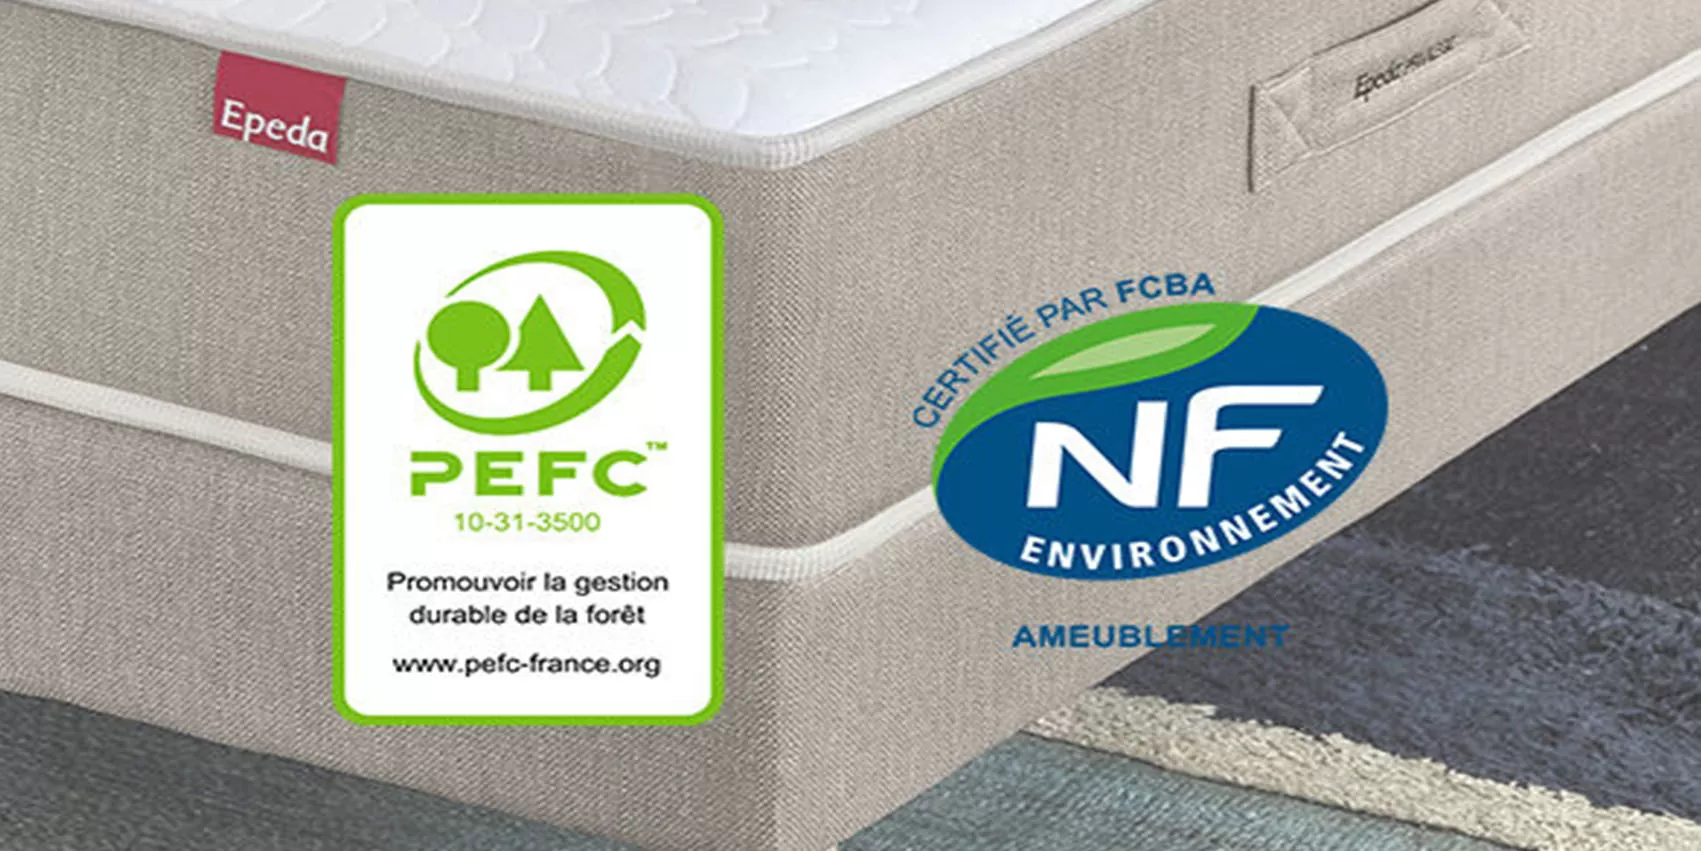 Certification PEFC er NF avec matelas en arrière plan de la marque Epeda